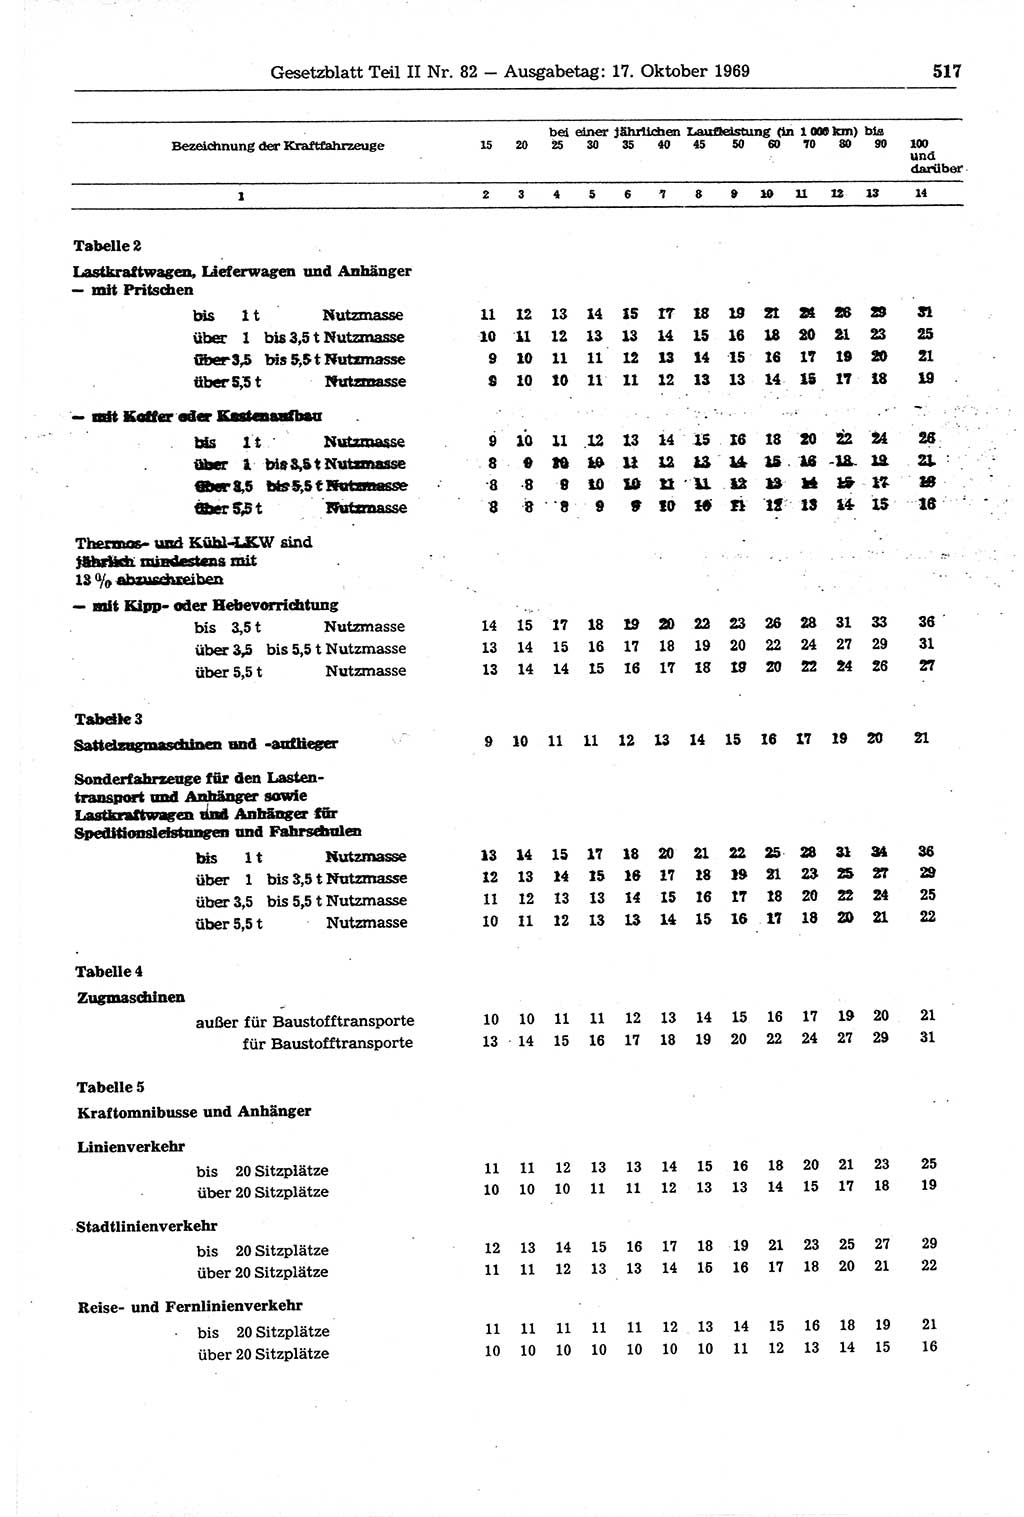 Gesetzblatt (GBl.) der Deutschen Demokratischen Republik (DDR) Teil ⅠⅠ 1969, Seite 517 (GBl. DDR ⅠⅠ 1969, S. 517)